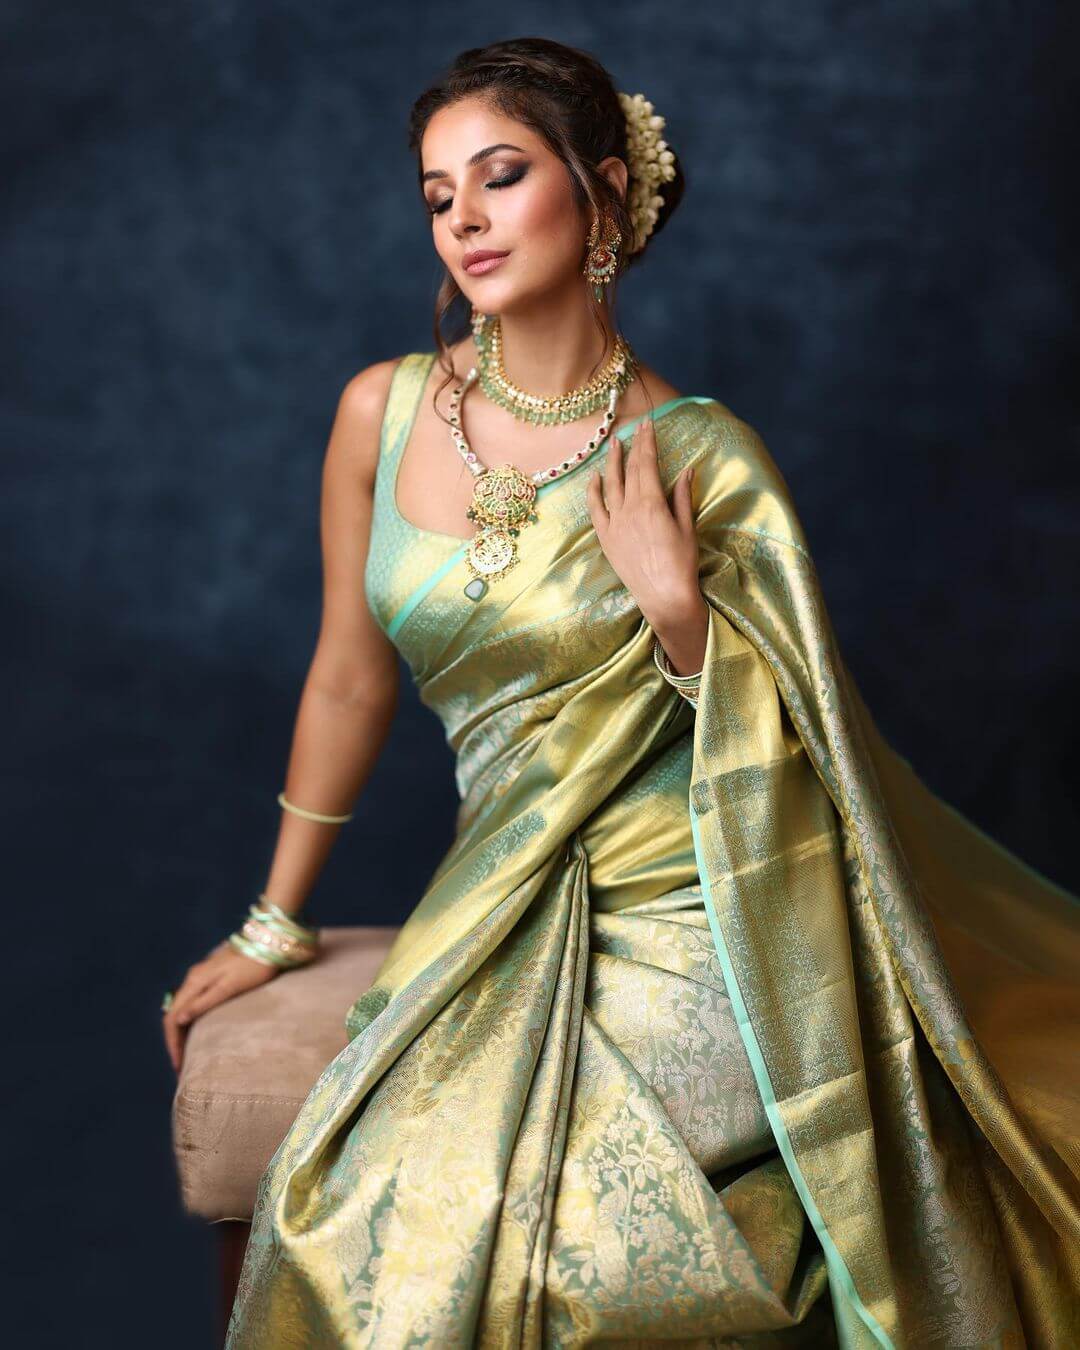 Trendy Fashion Styling With Bollywood Divas shehnaaz gill